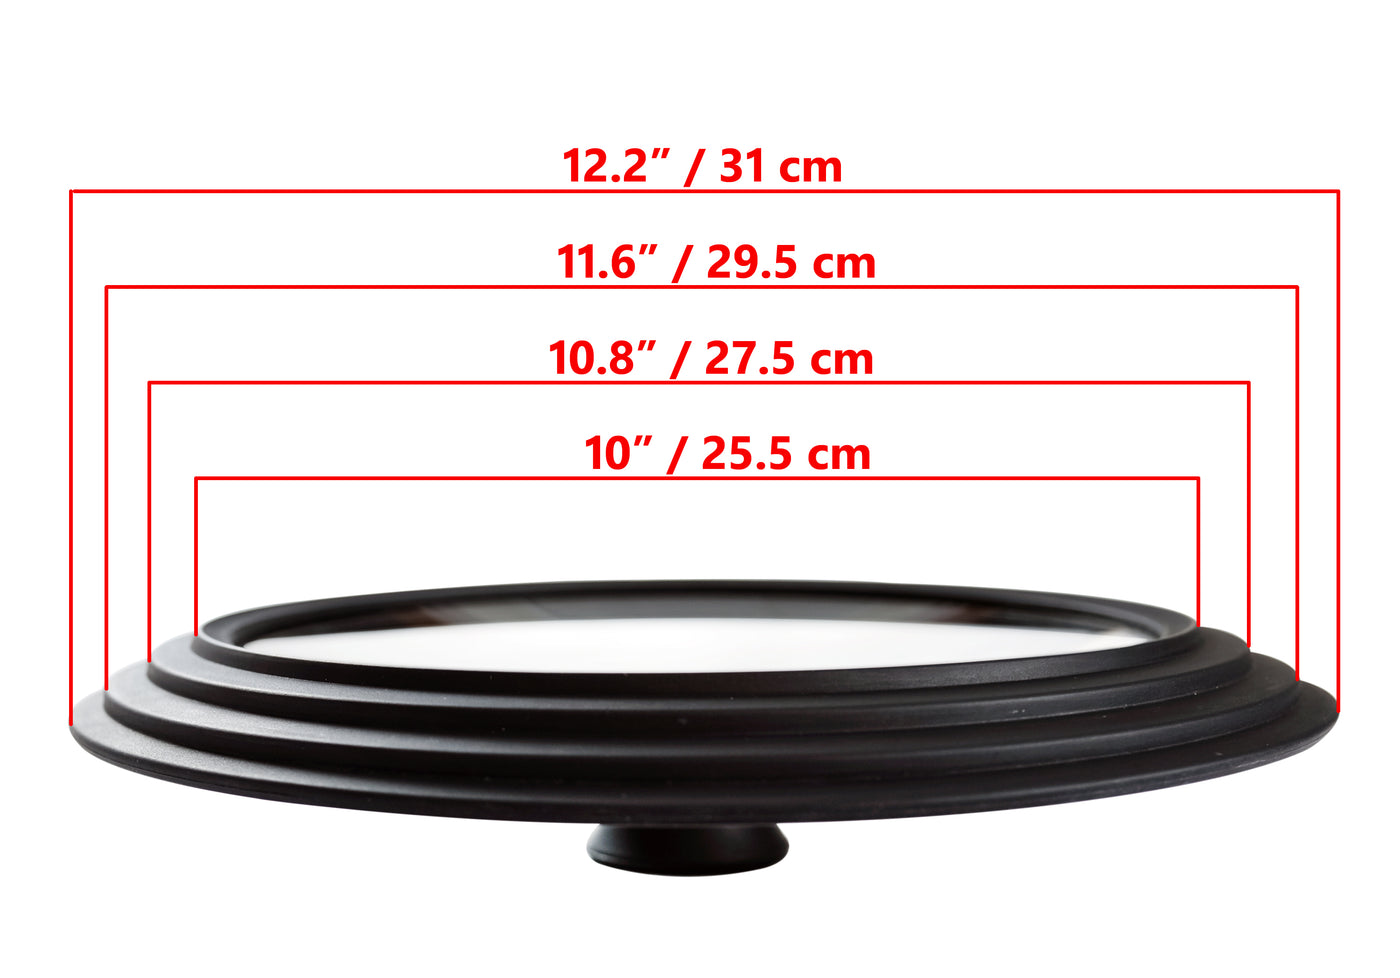 Glaslåg Universal - Multistørrelse, ydre kanter 12,2" / 31 cm diameter, til gryder og pander, sort